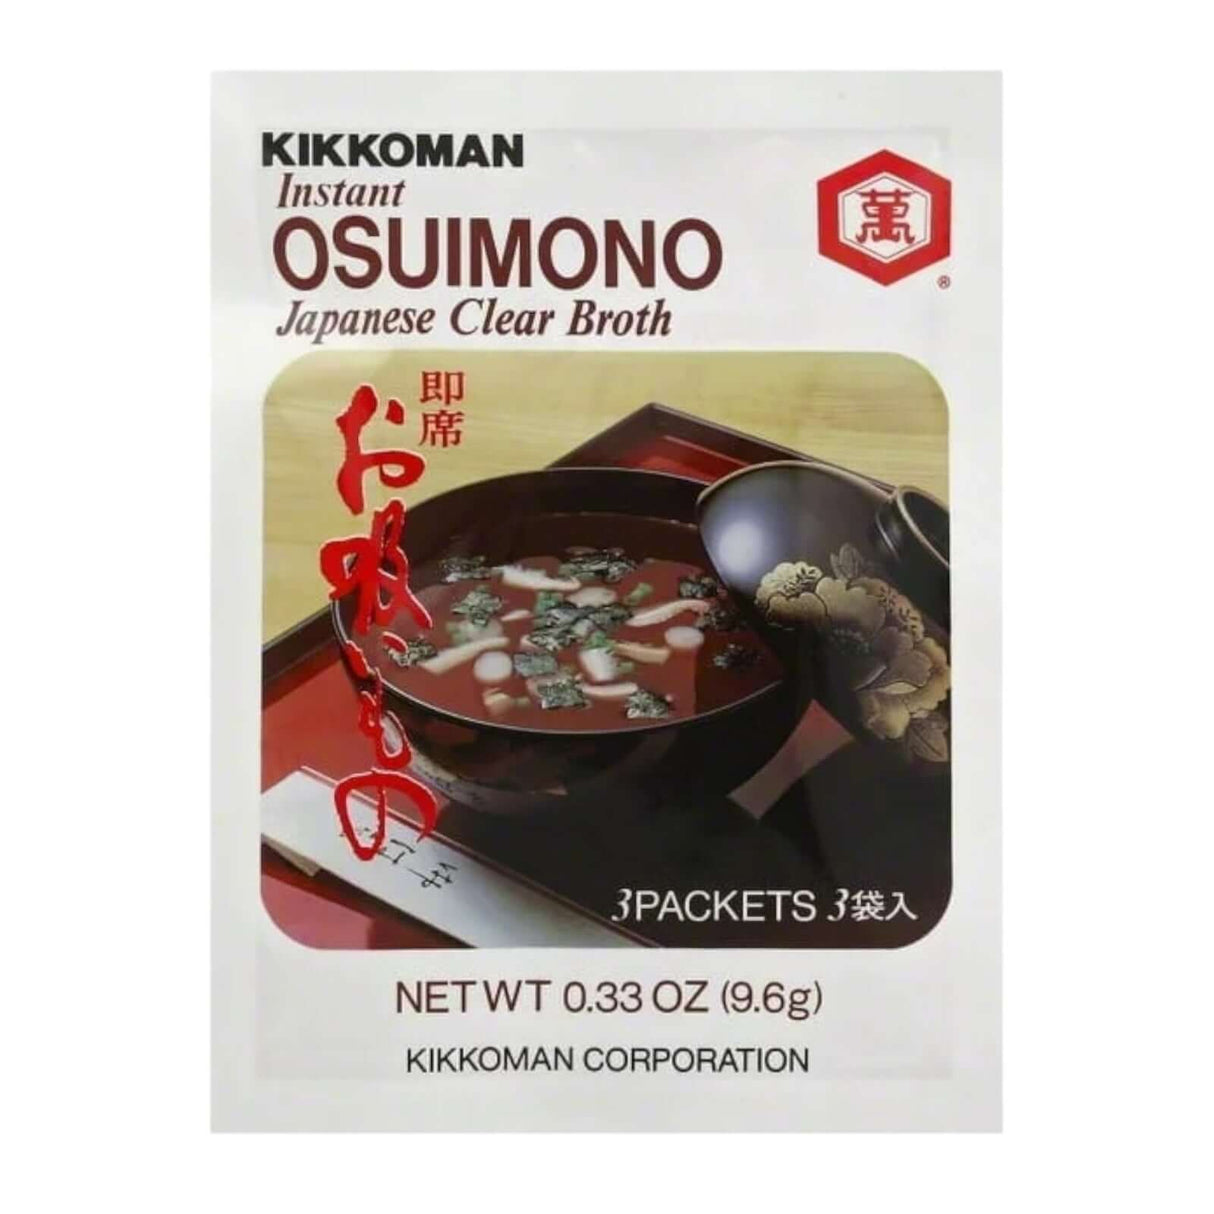 Kikkoman Instant Osuimono Soup